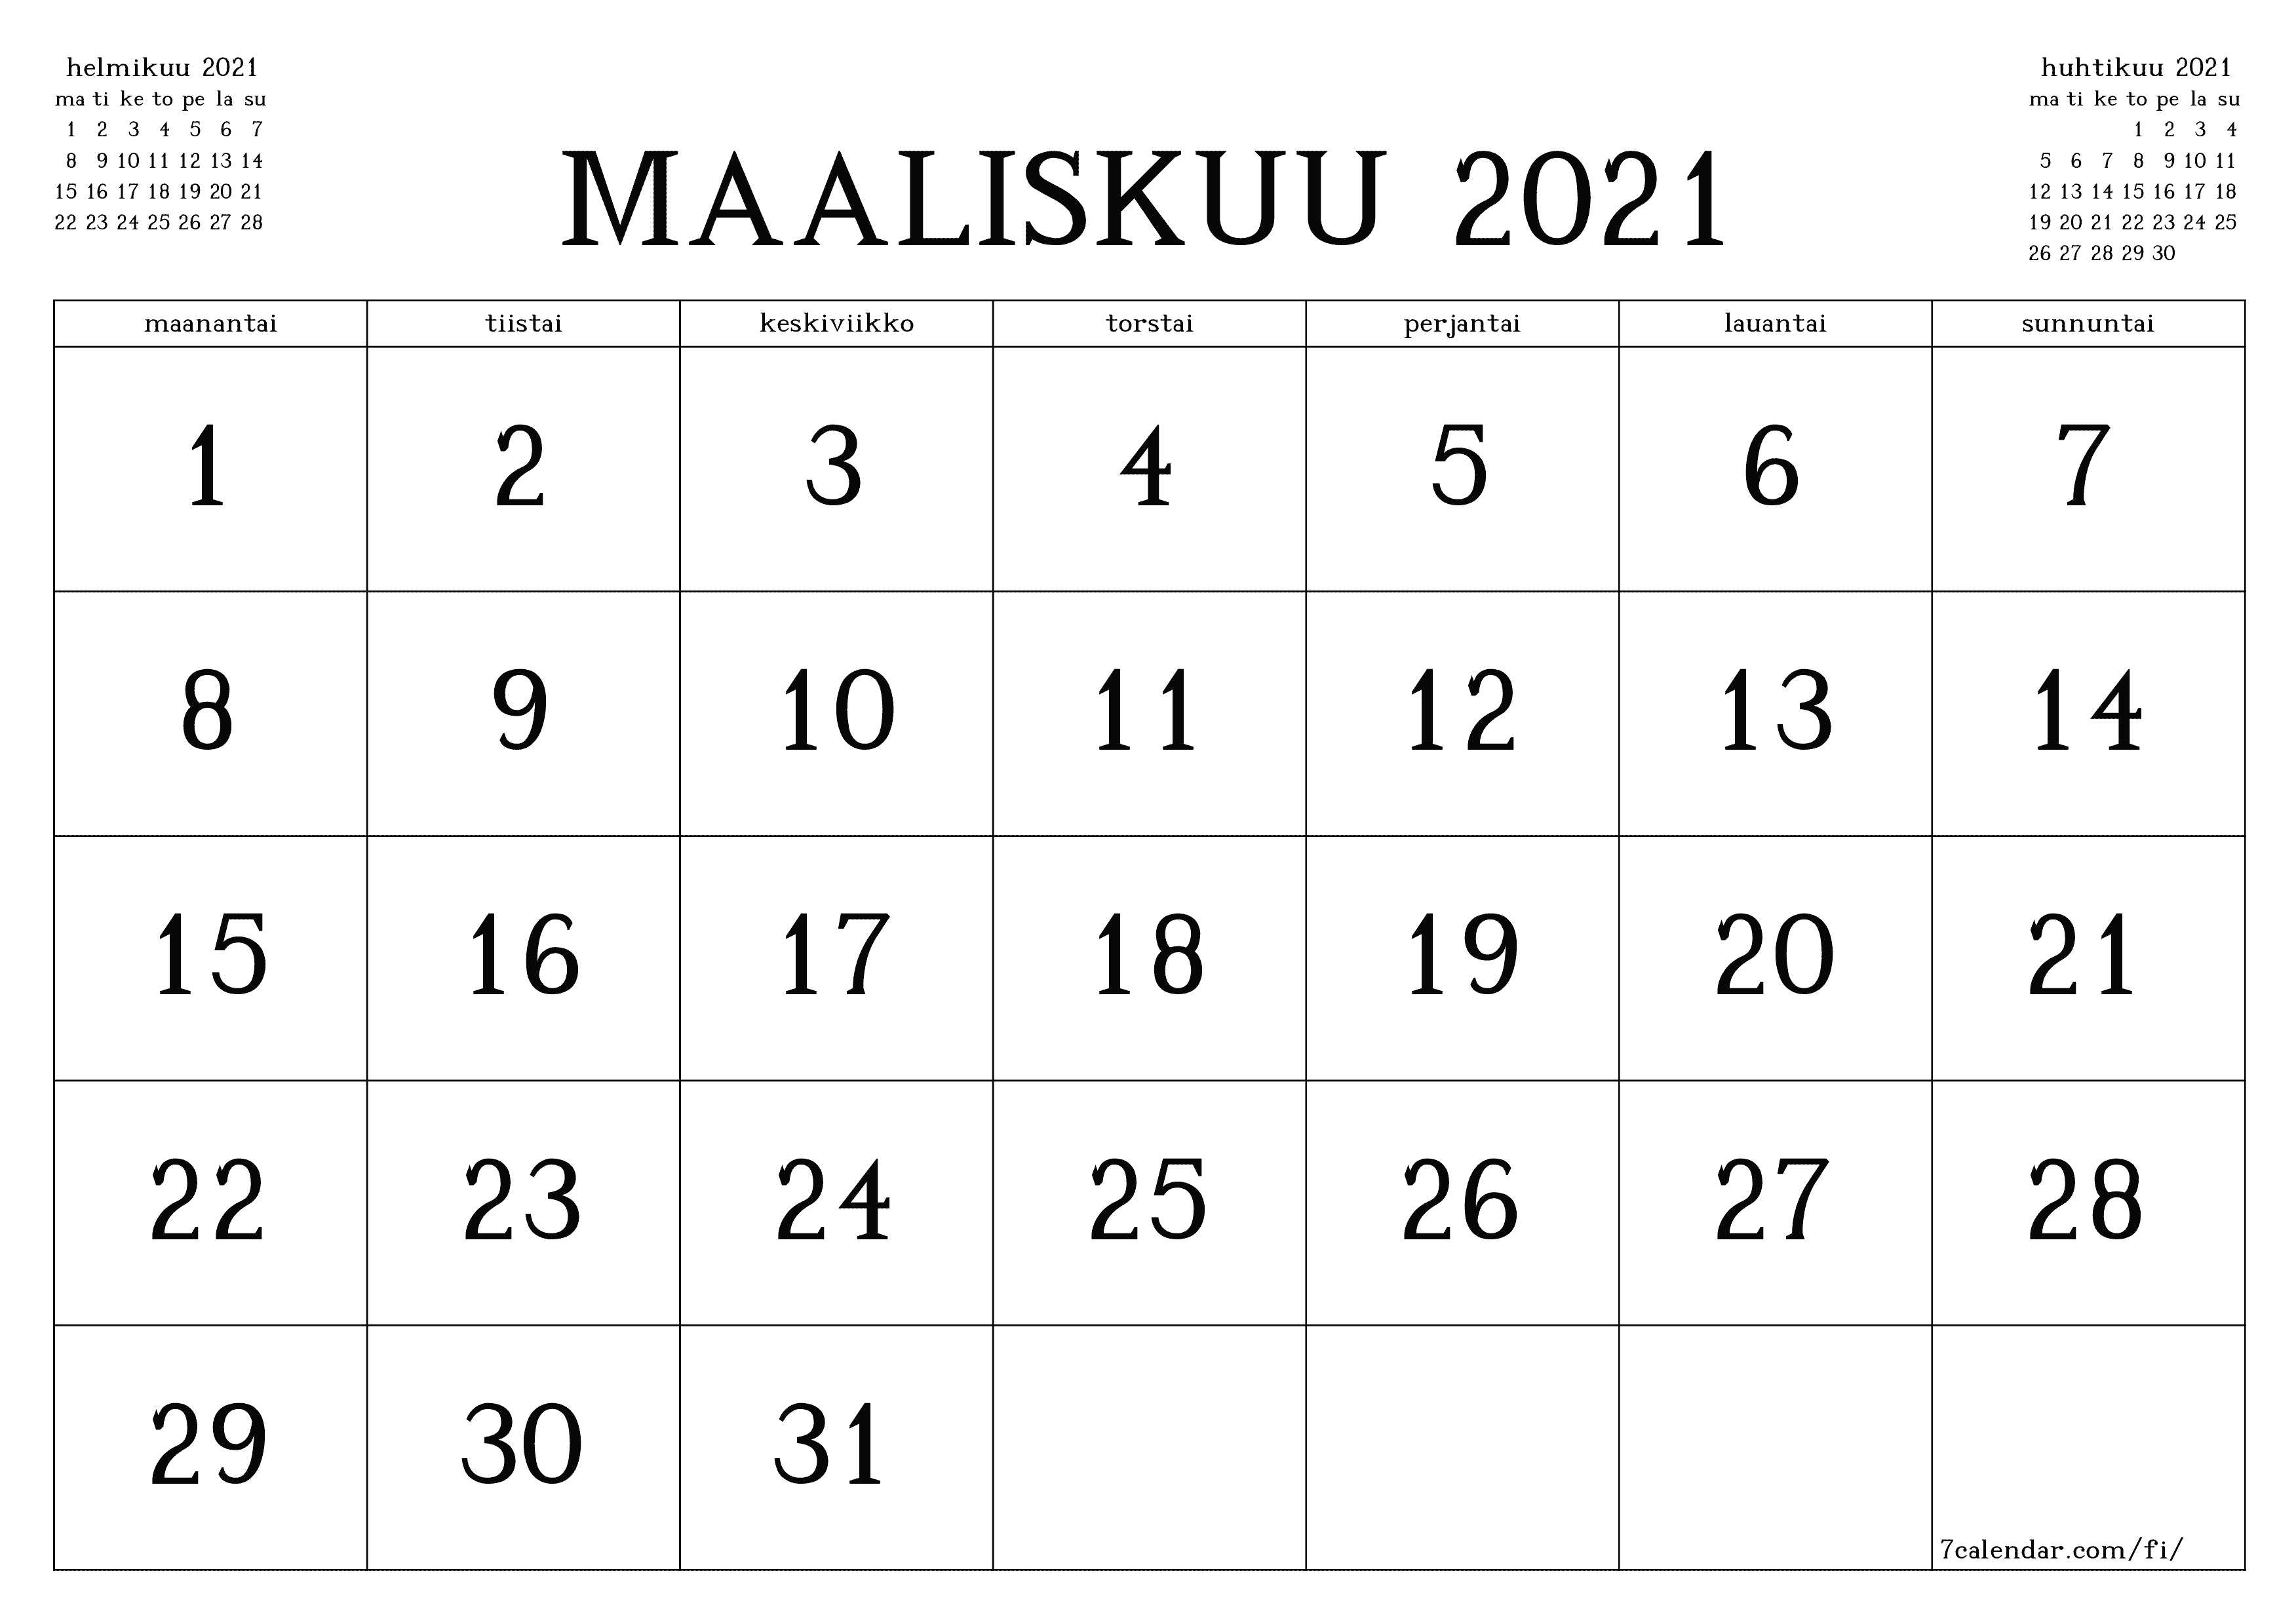 Tyhjennä kuukausittainen suunnittelija kuukaudelle maaliskuu 2021 muistiinpanoilla, tallenna ja tulosta PDF-muotoon PNG Finnish